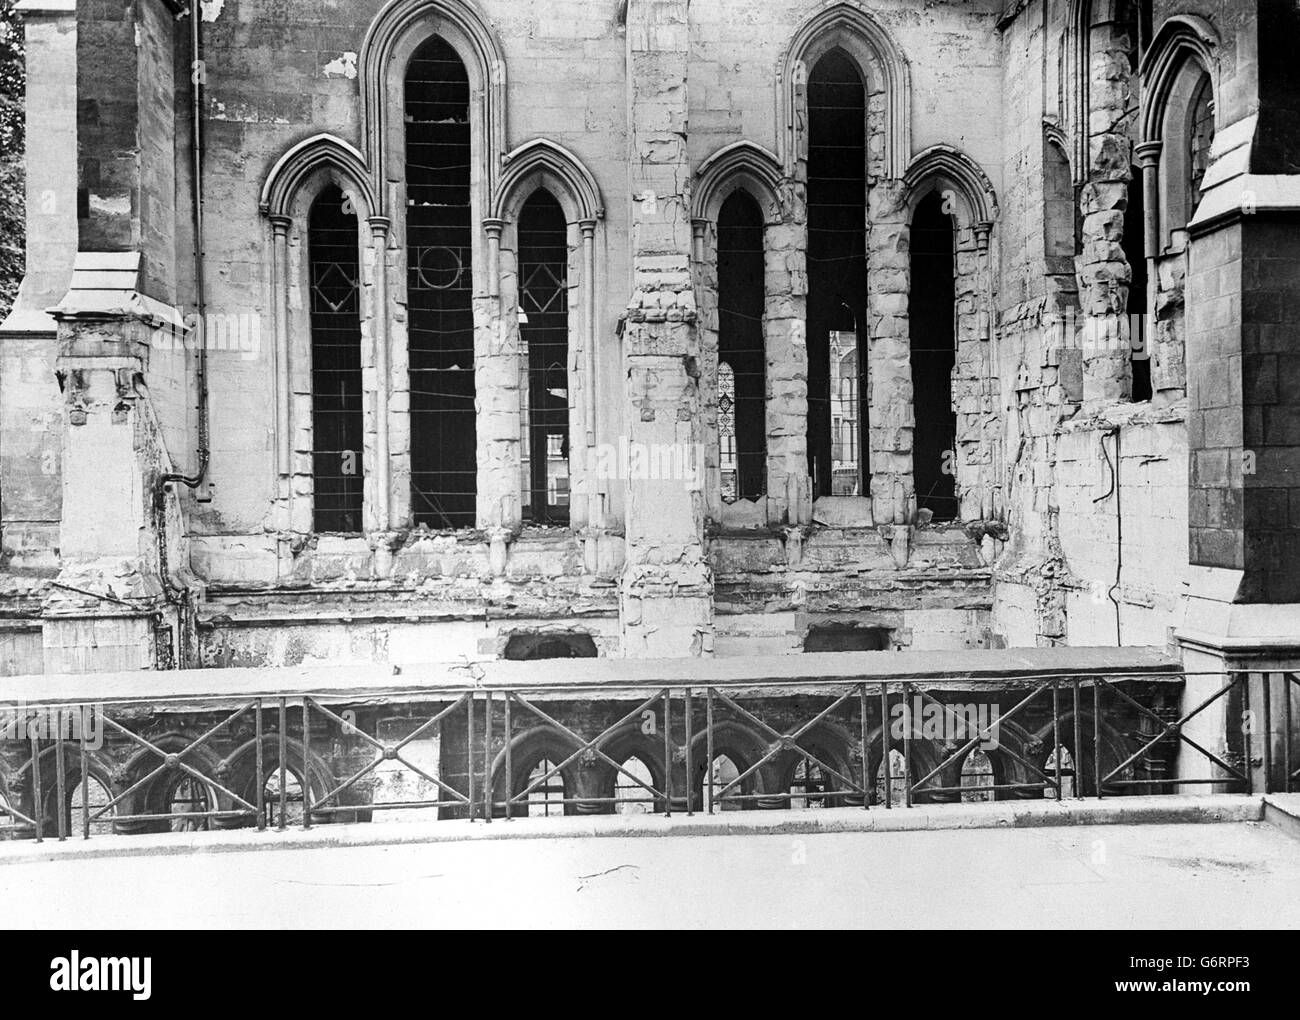 La Seconde Guerre mondiale - Le Blitz - Temple Church - Londres - 1941 Banque D'Images